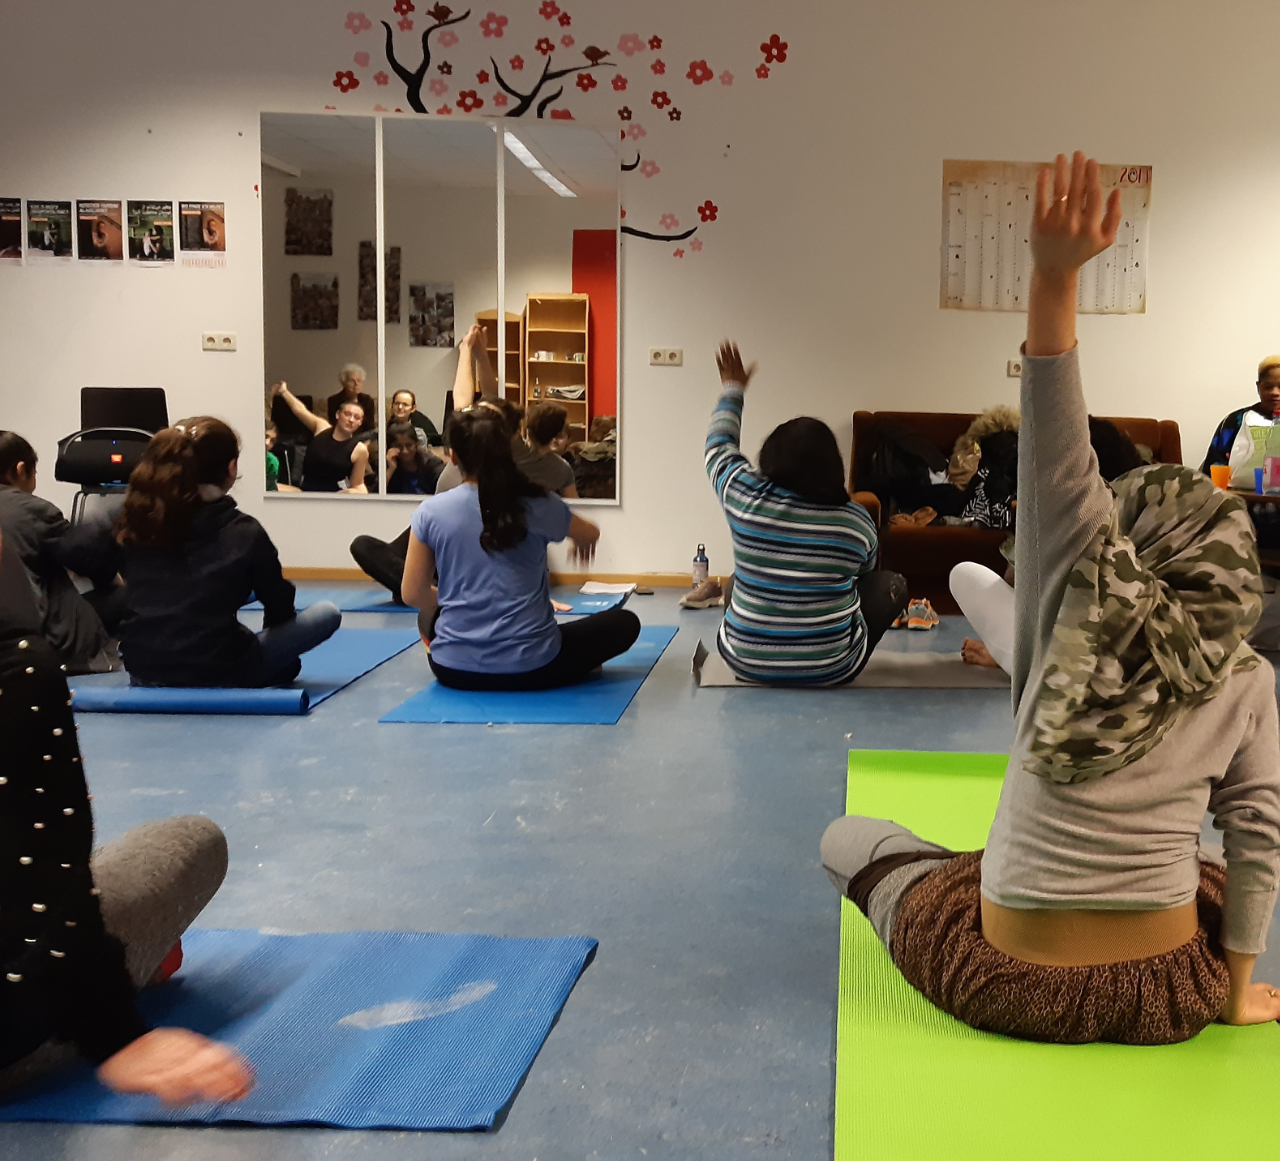 Von hinten sind etwa 5 Frauen zu sehen, die auf Yoga-Matten auf dem Boden sitzen. Zwei strecken gerade weit ihre Arme nach oben. Vor ihnen an der Wand ist ein großer Spiegel, in dem sich noch weitere Frauen im Hintergrund spiegeln.